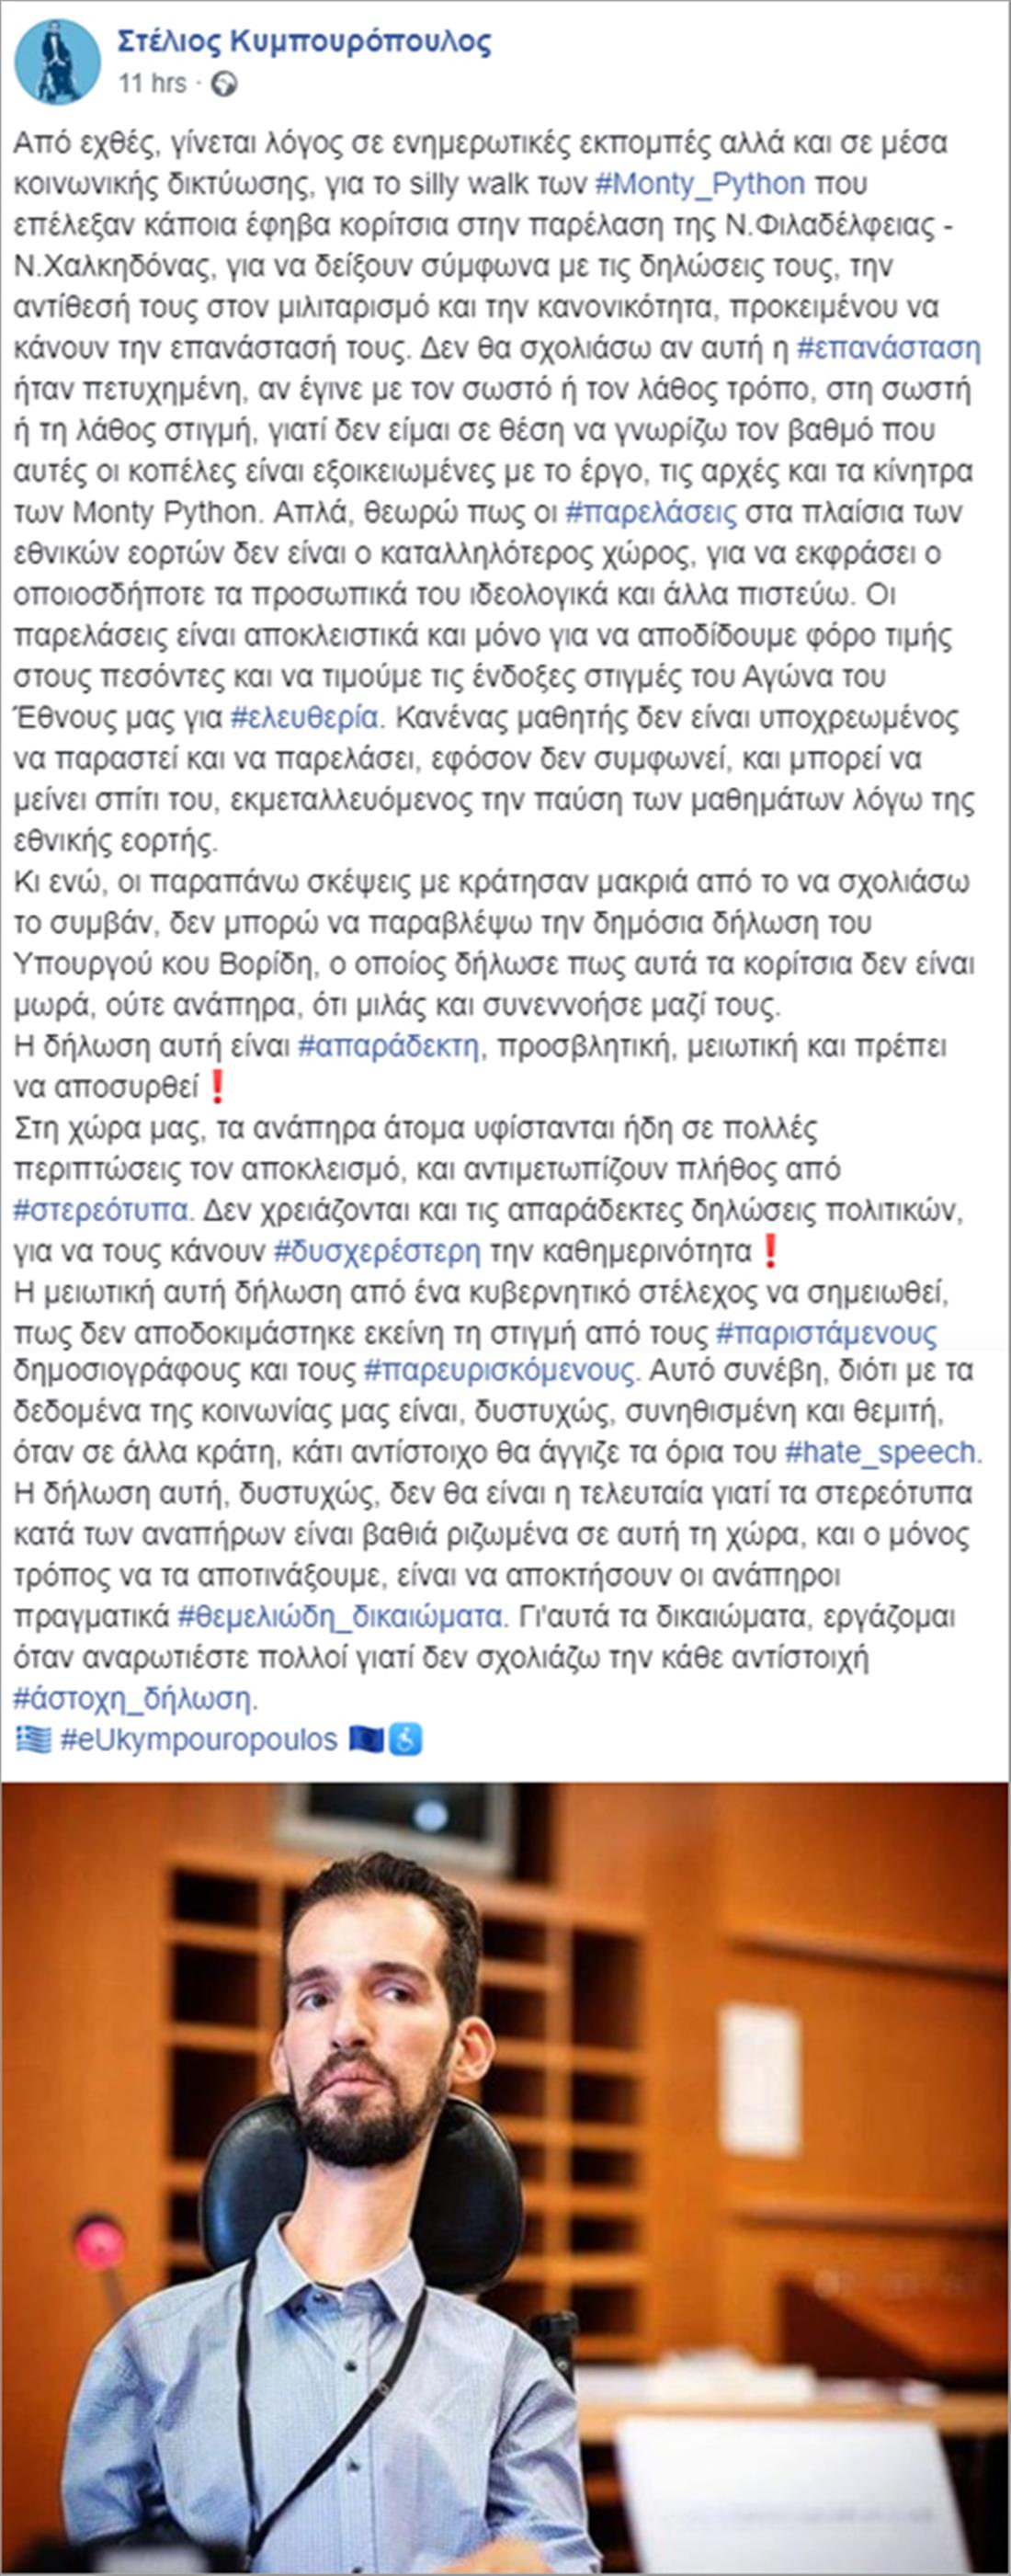 Κυμπουρόπουλος - facebook - παρέλαση - silly walk - Monty Python - Βορίδης